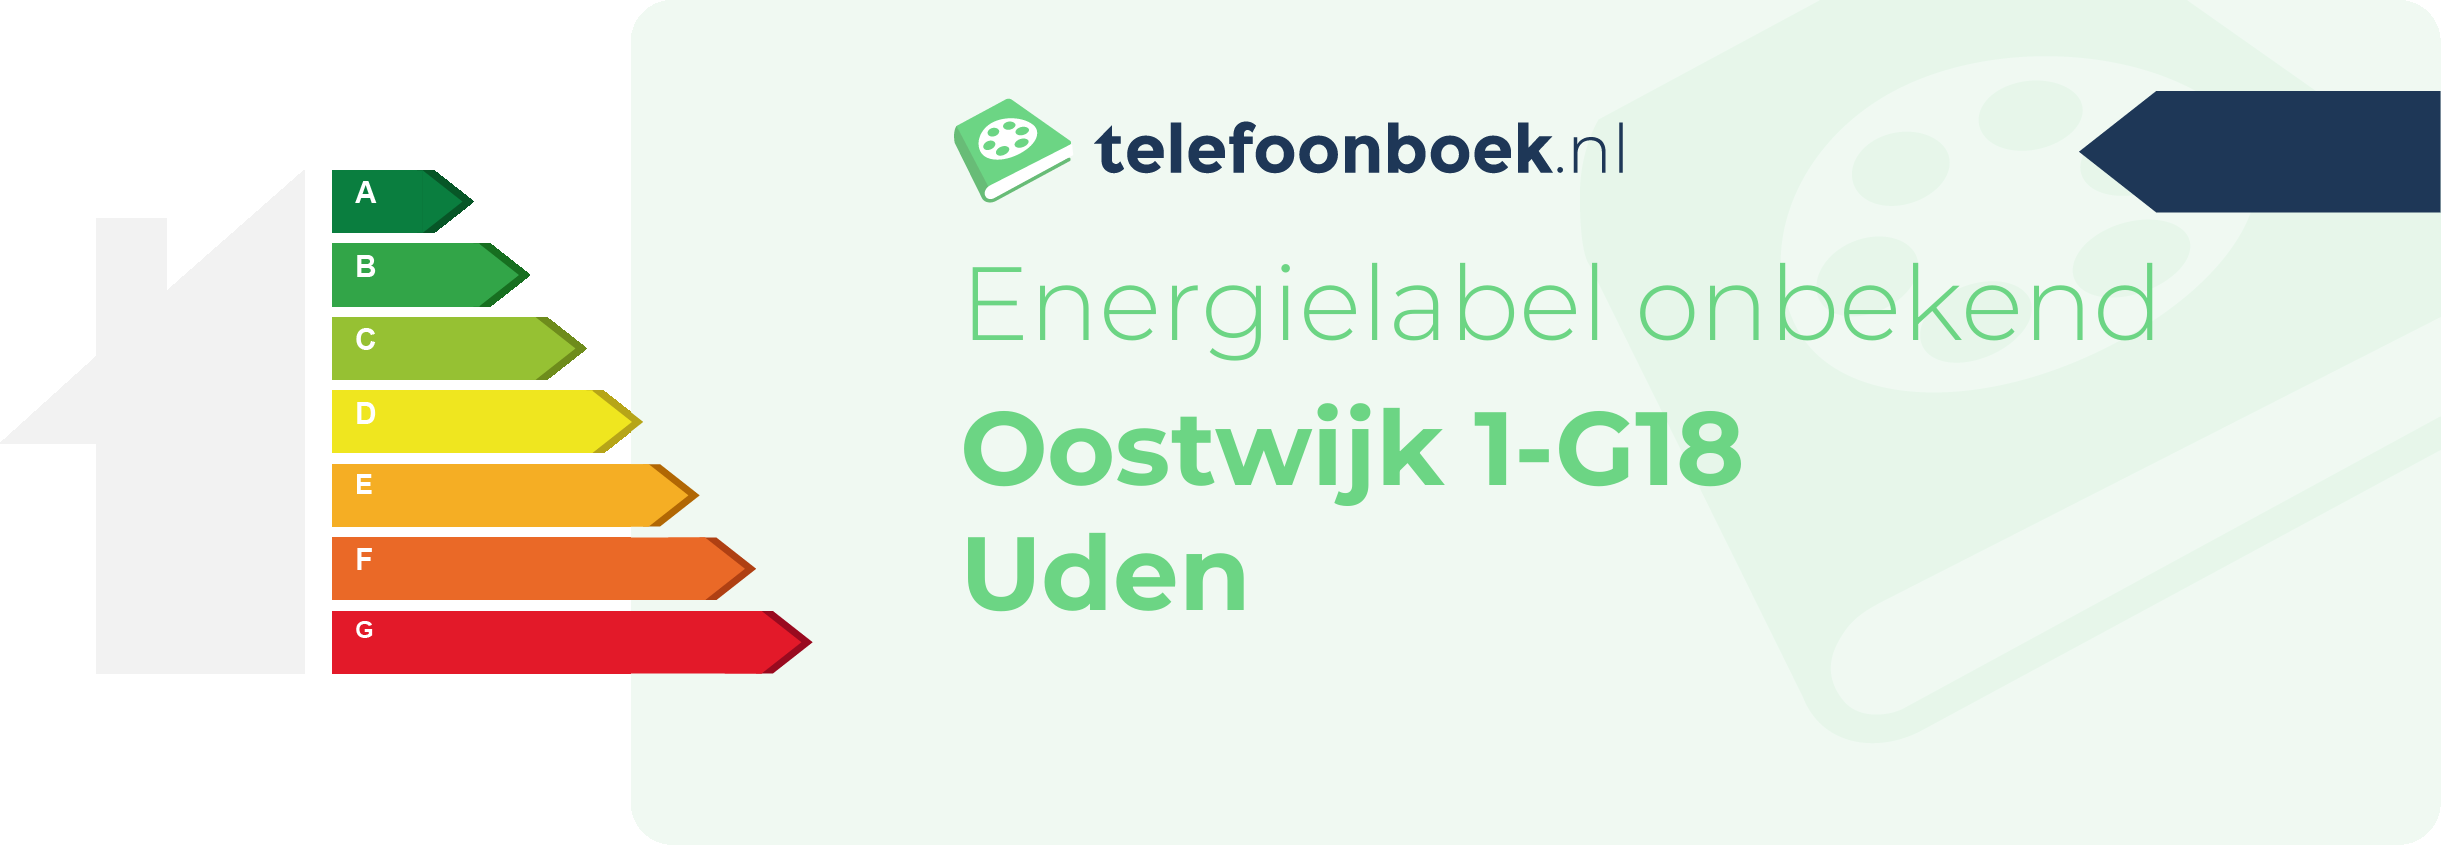 Energielabel Oostwijk 1-G18 Uden